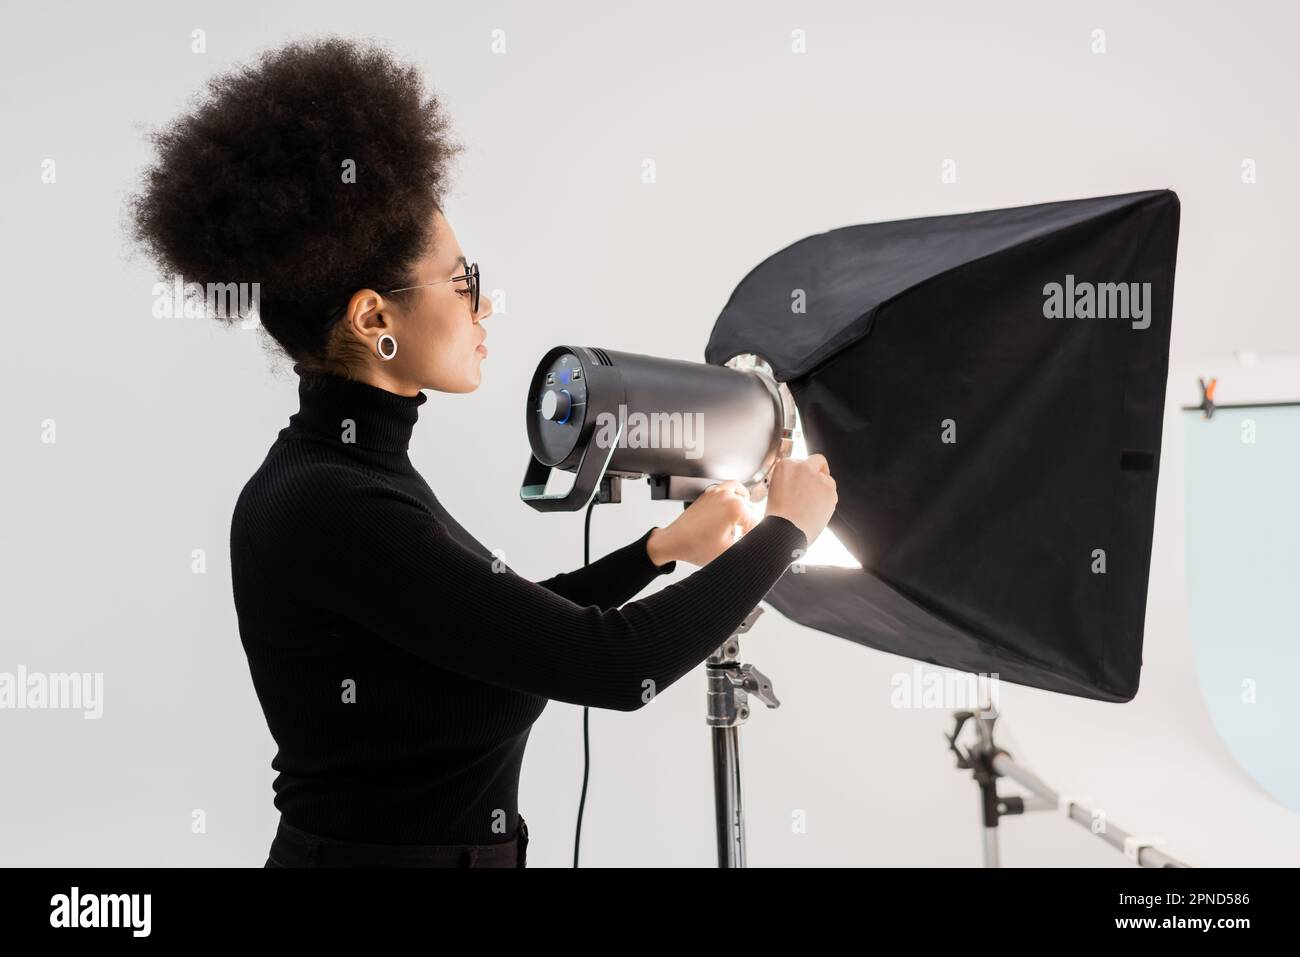 vista laterale del content maker afro-americano che monta riflettori e softbox in studio fotografico, immagine stock Foto Stock